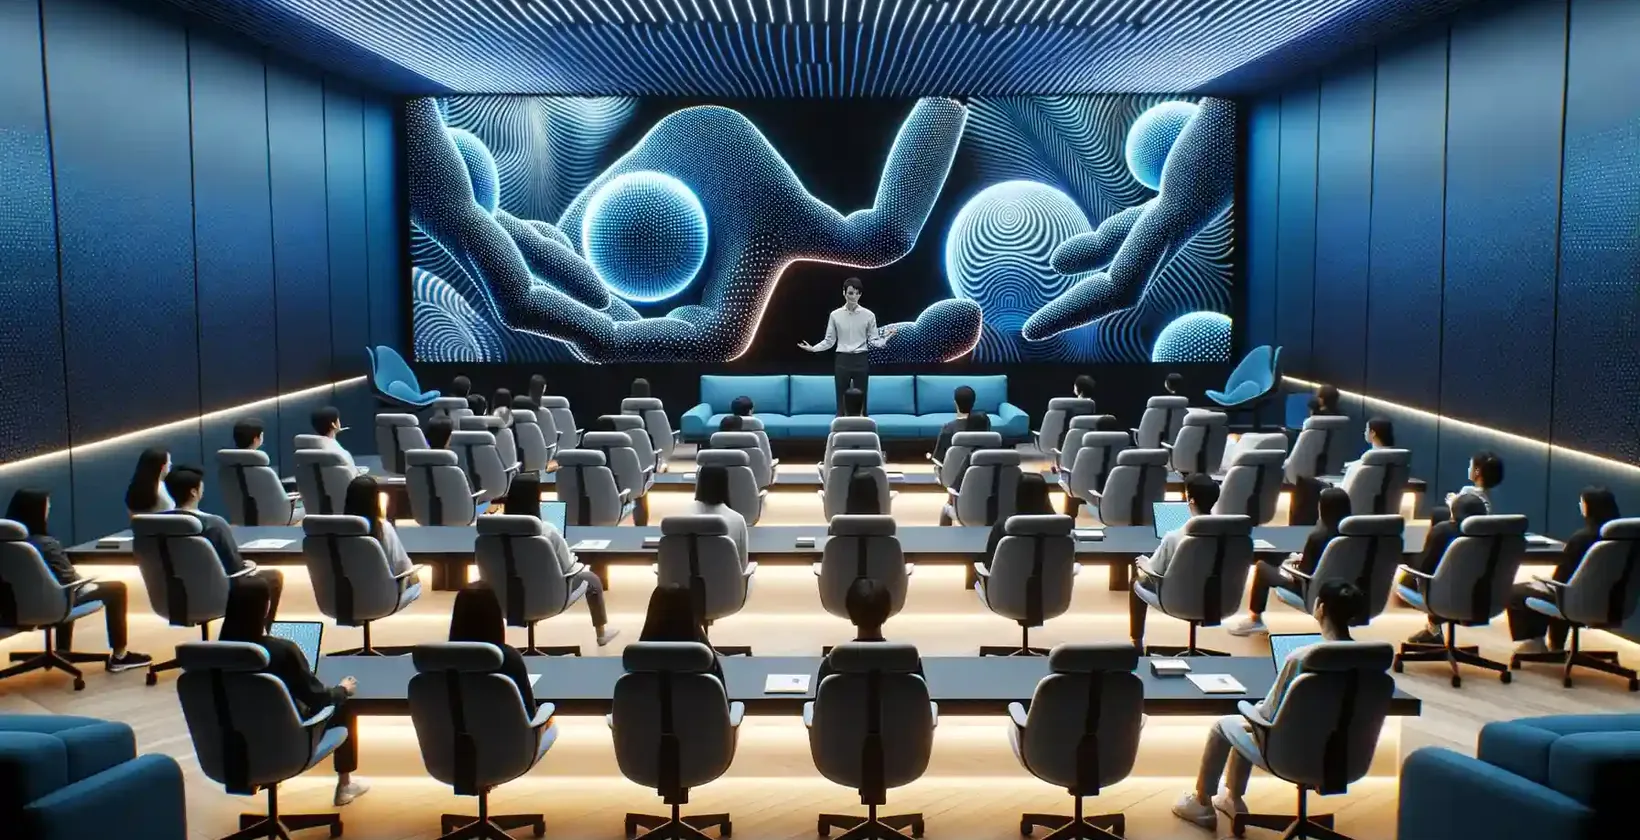 Moderná prednášková sála plná účastníkov sediacich na plyšových stoličkách, z ktorých každý je vybavený individuálnou pracovnou stanicou